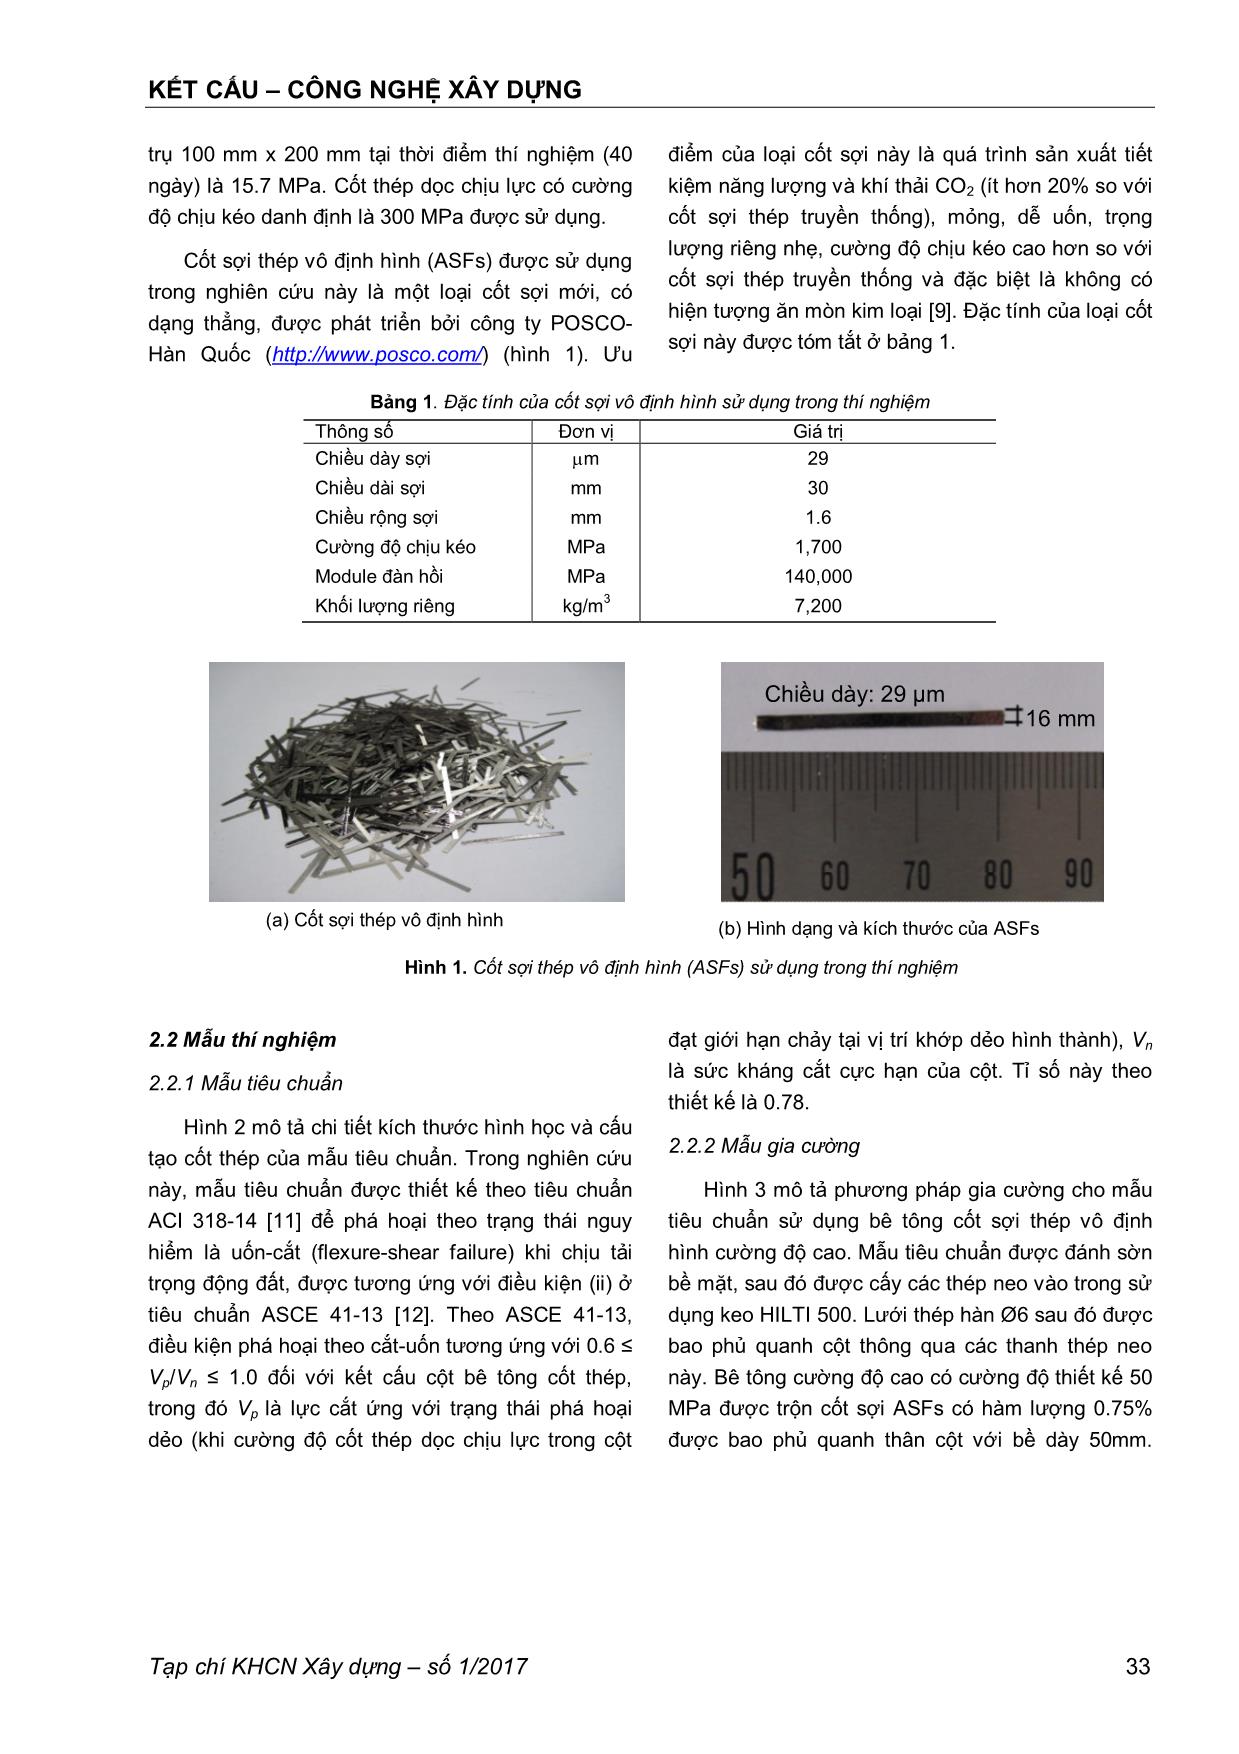 Nghiên cứu thực nghiệm gia cường kháng chấn cho cột bê tông cốt thép sử dụng cốt sợi thép vô định hình trang 2